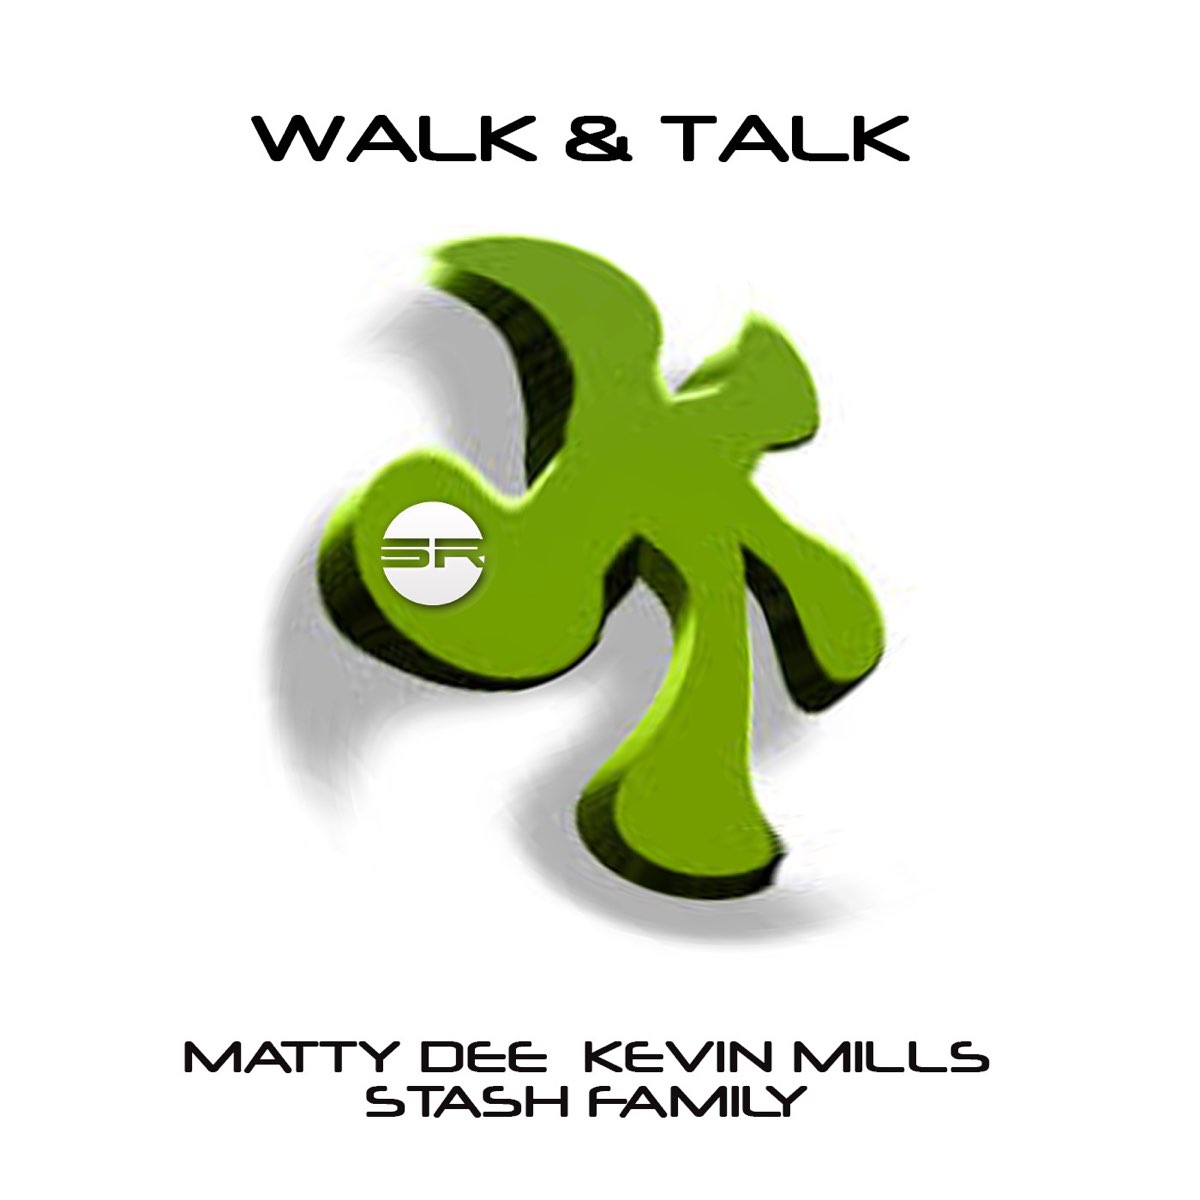 Walk talk. Walk the talk Графика. Walk & talk by. Walk talk ютуб